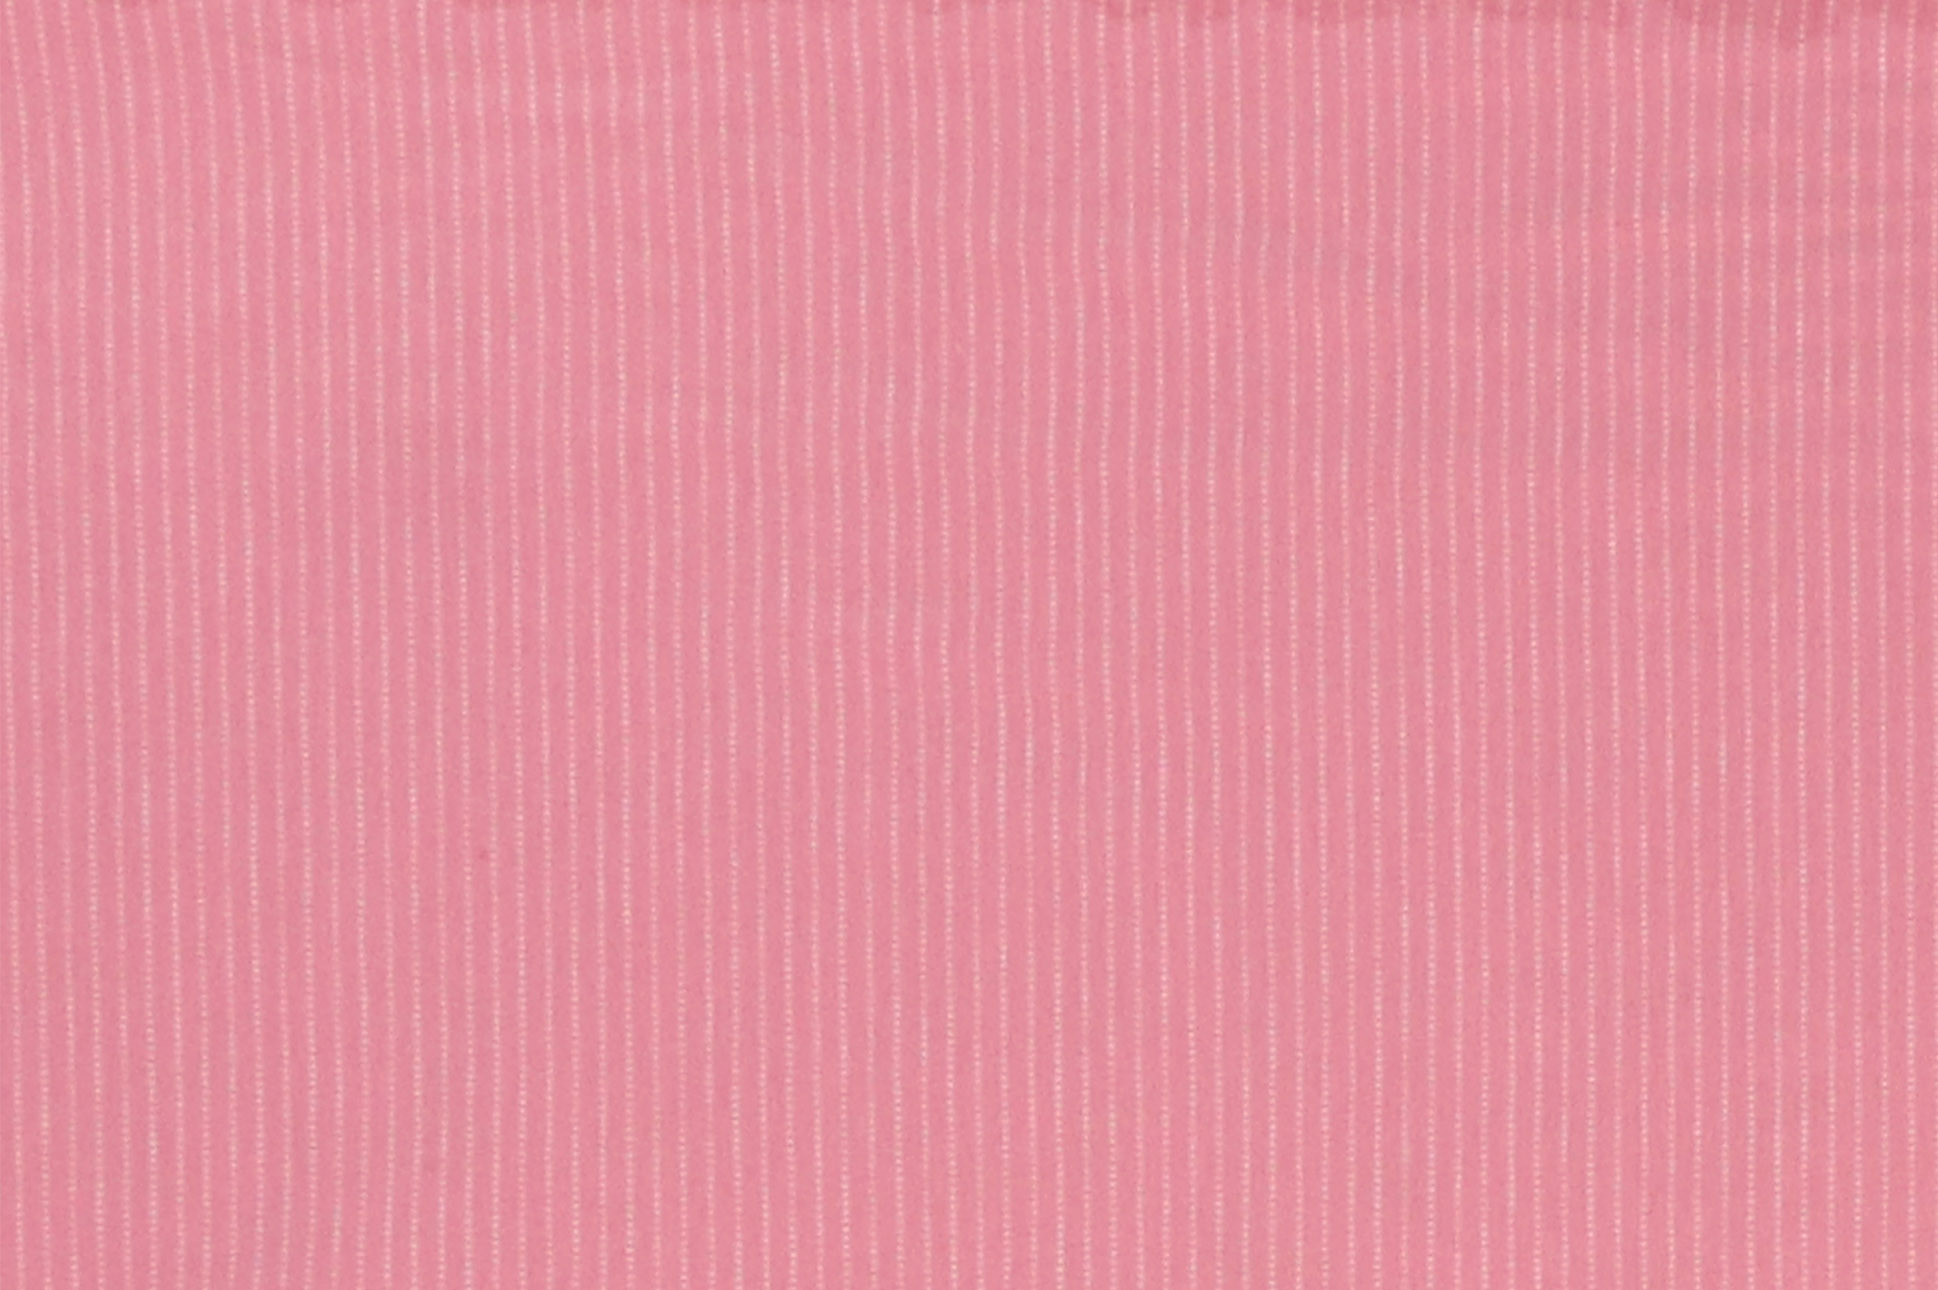 Jersey di cotone, strisce tratteggiate su fondo rosa antico